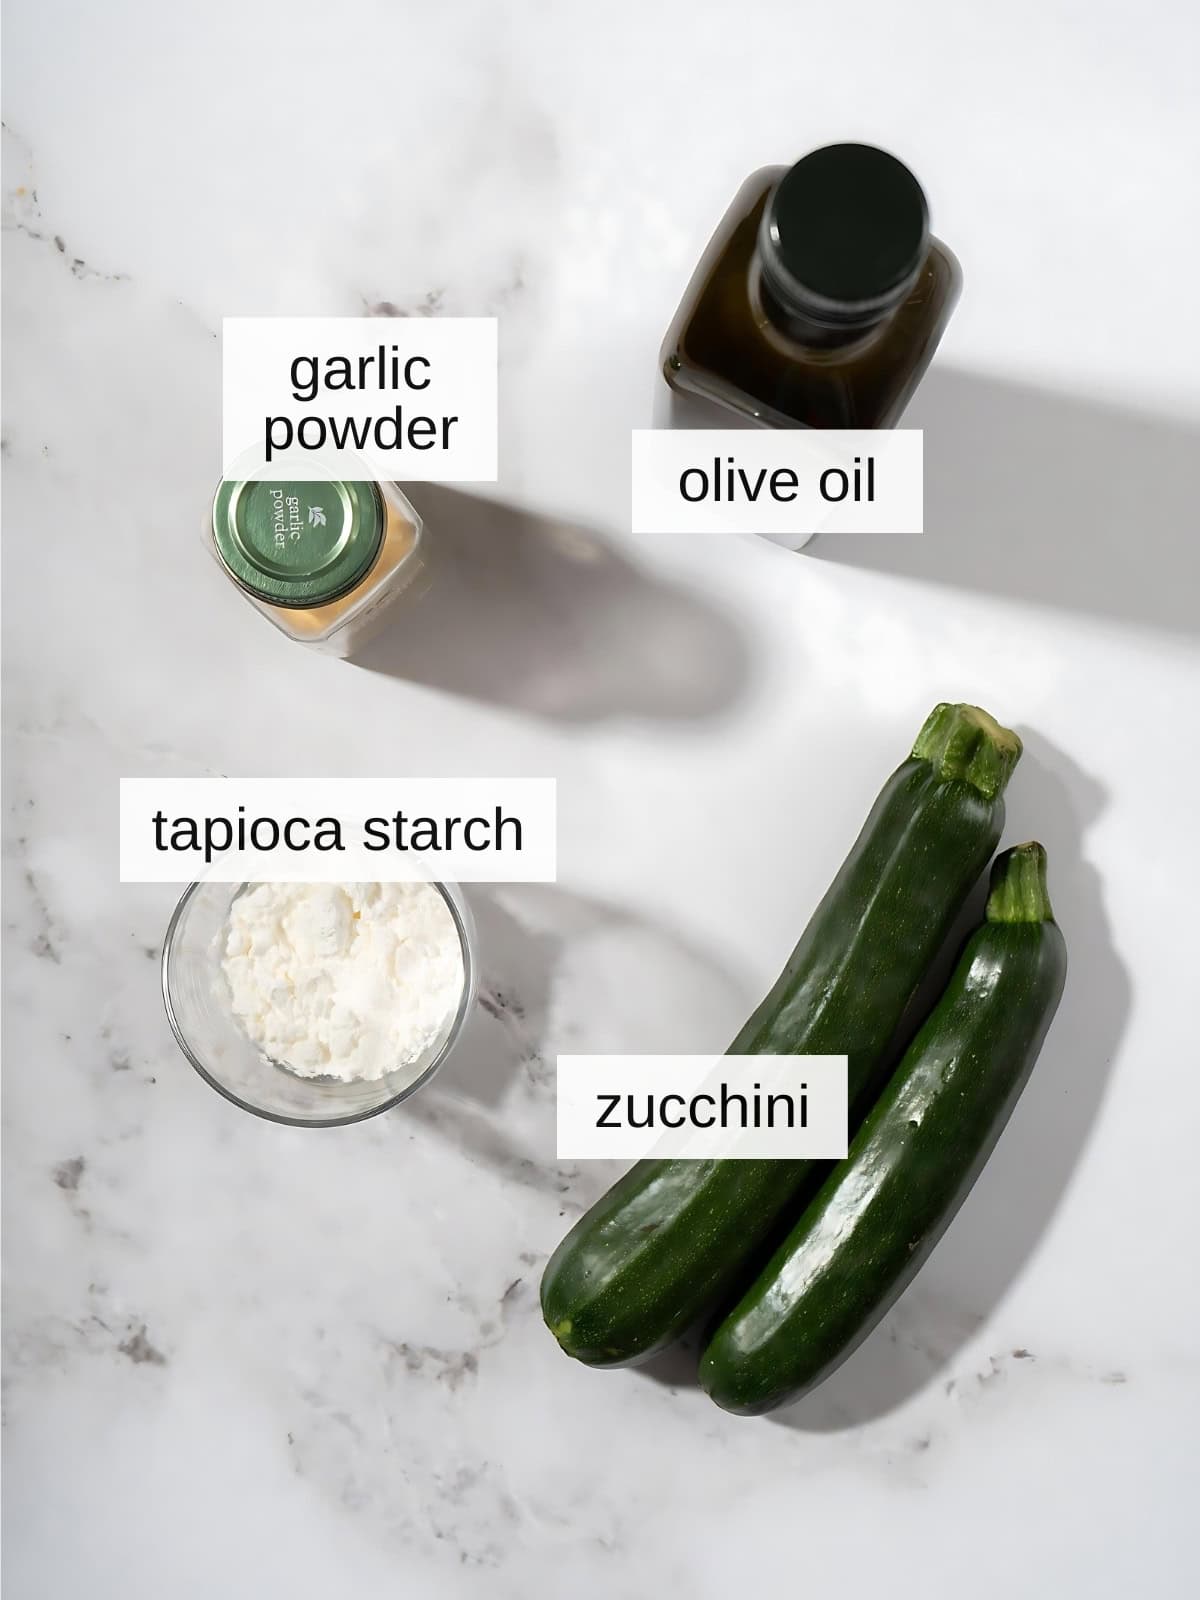 Crispy zucchini fries recipe ingredients with garlic powder, olive oil, tapioca starch, zucchini